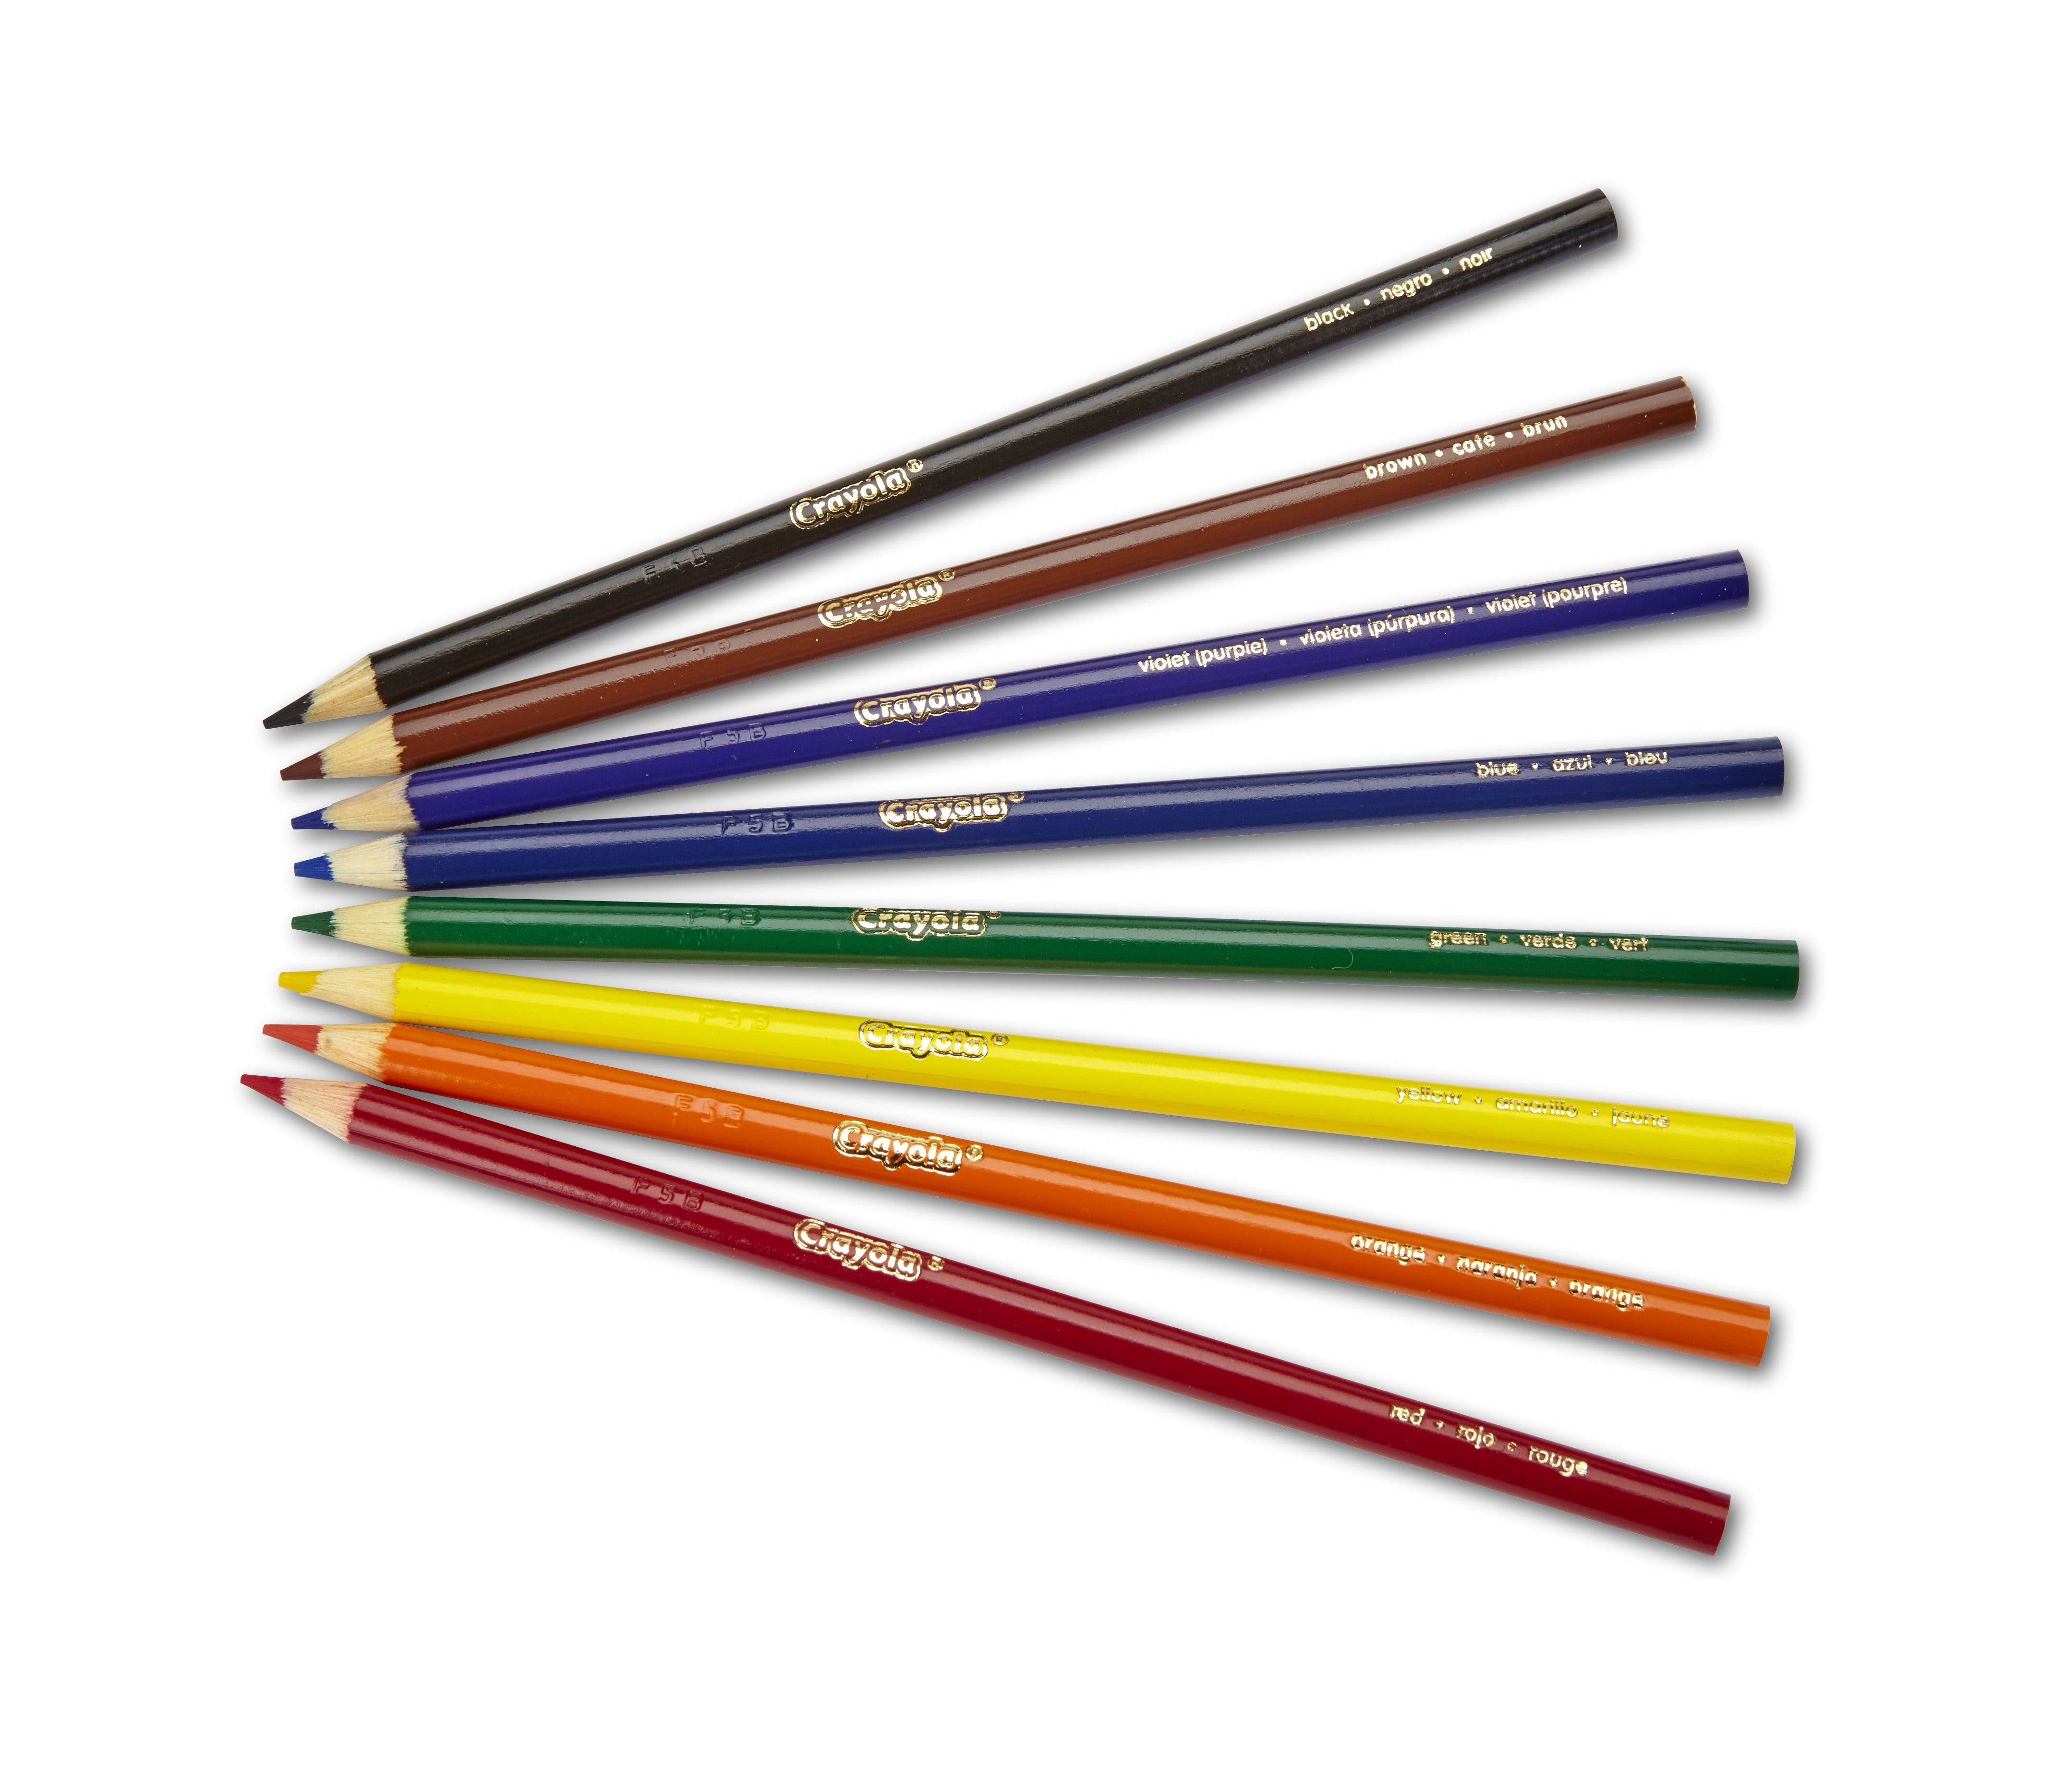 8pcs Crayon Color Pencil Set Rainbow Pencils For Children Kids